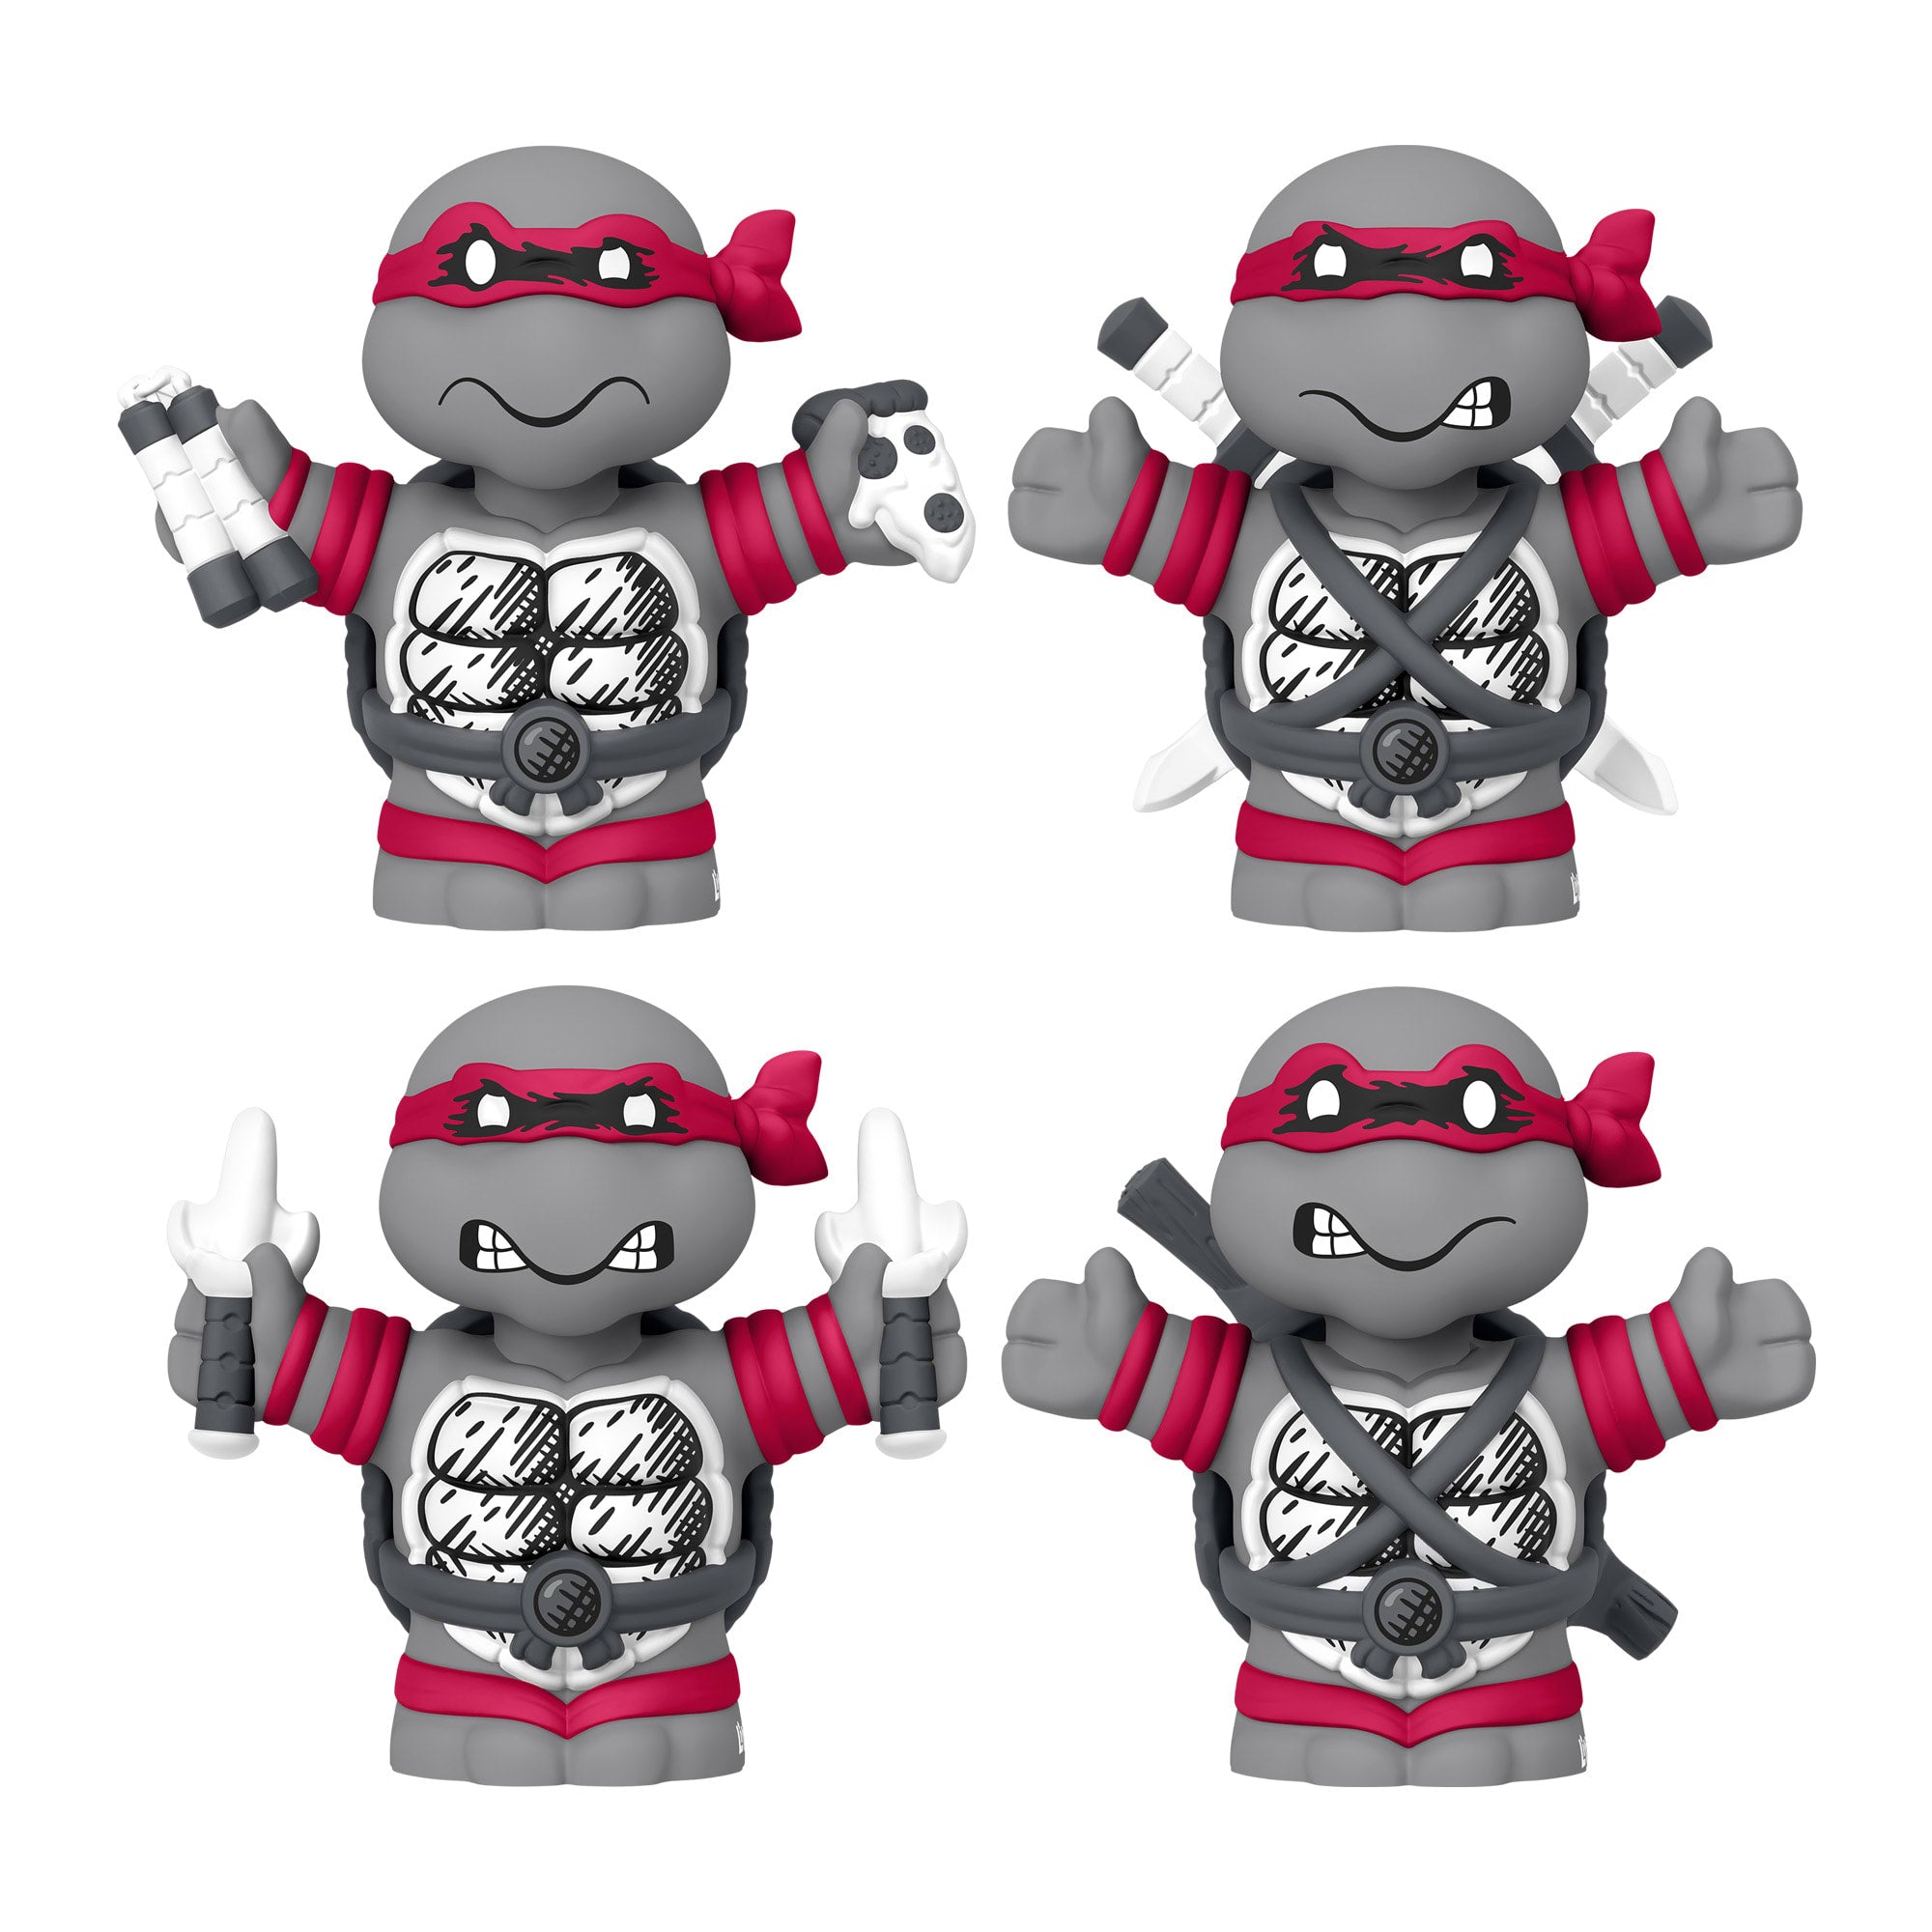 Little People Collector Teenage Mutant Ninja Turtles: Origins Special Edition Figure Set